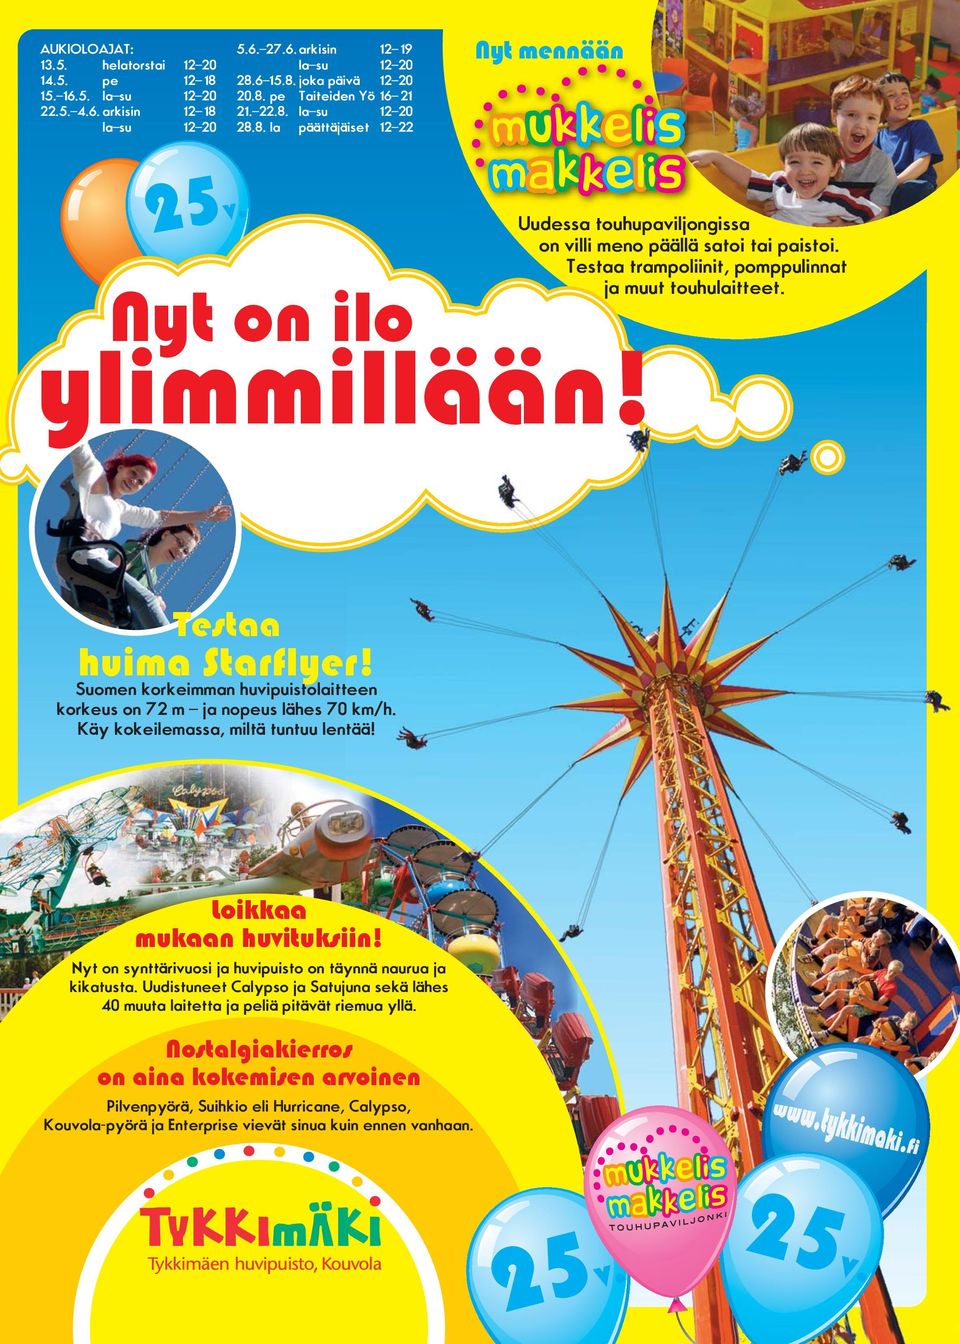 Testaa trampoliinit, pomppulinnat ja muut touhulaitteet. Testaa huima Starflyer! Suomen korkeimman huvipuistolaitteen korkeus on 72 m ja nopeus lähes 70 km/h. Käy kokeilemassa, miltä tuntuu lentää!